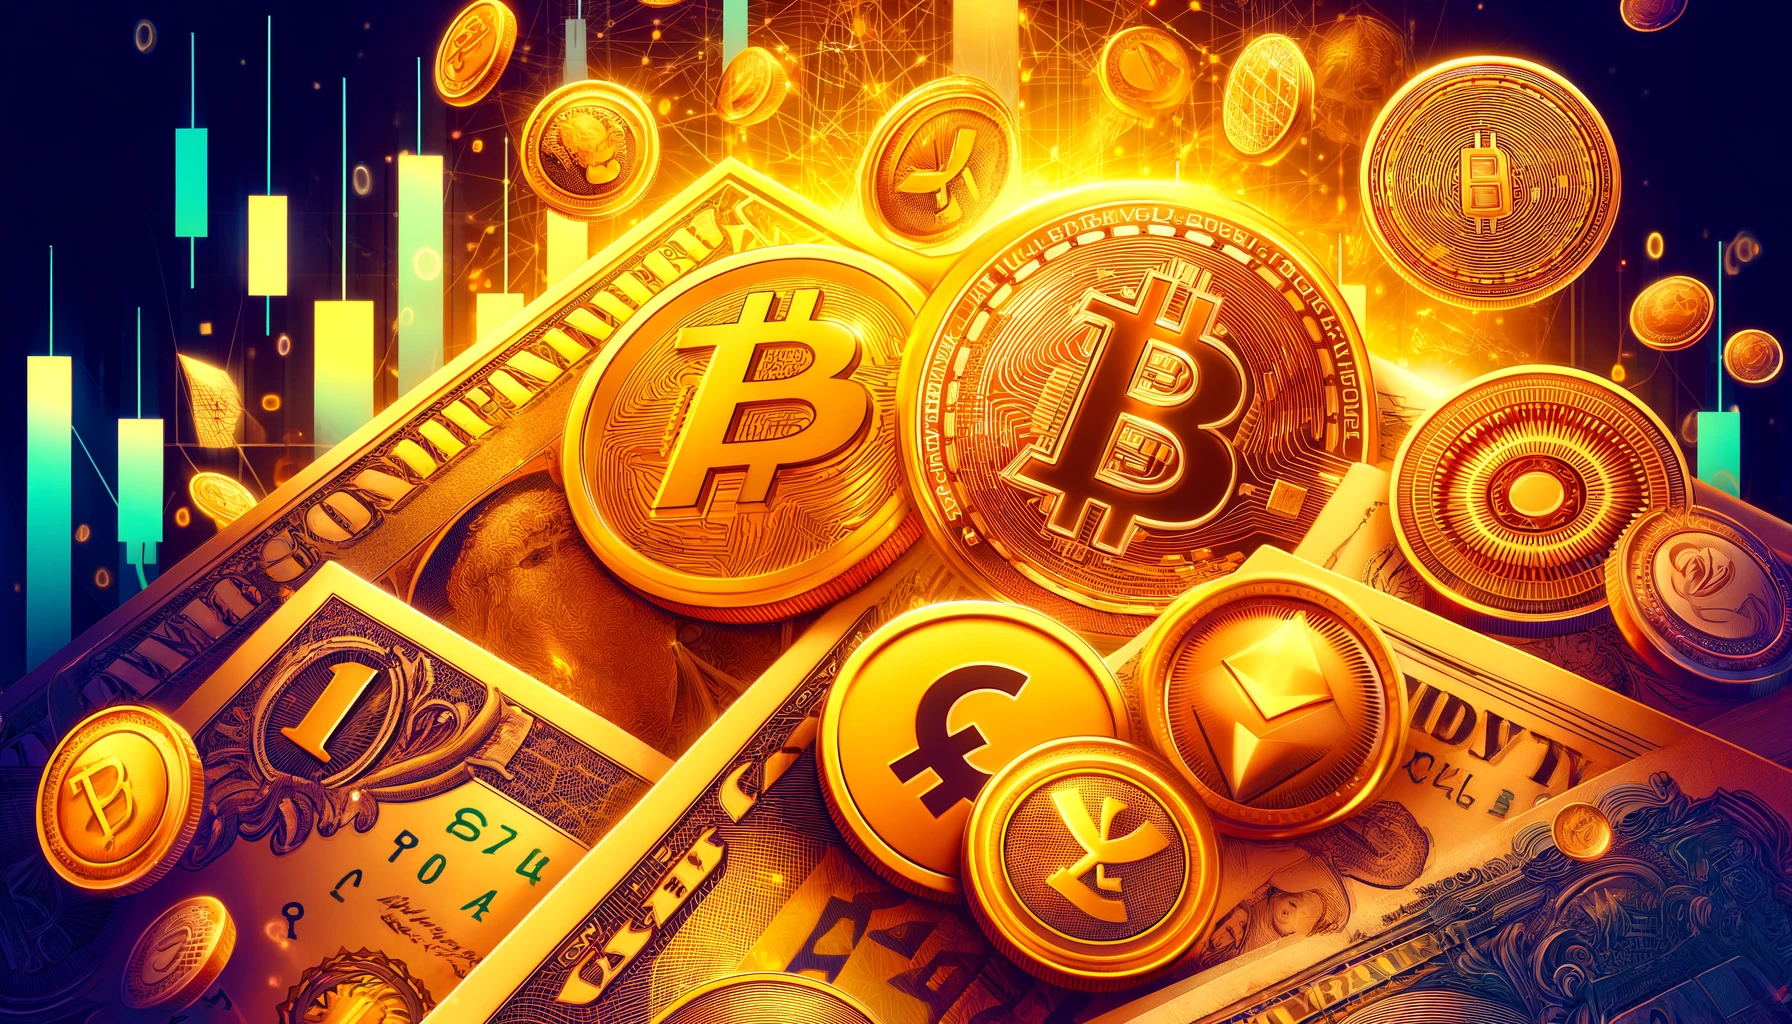 フィアット通貨と仮想通貨のシンボルを背景にした派手なゴールド色の画像